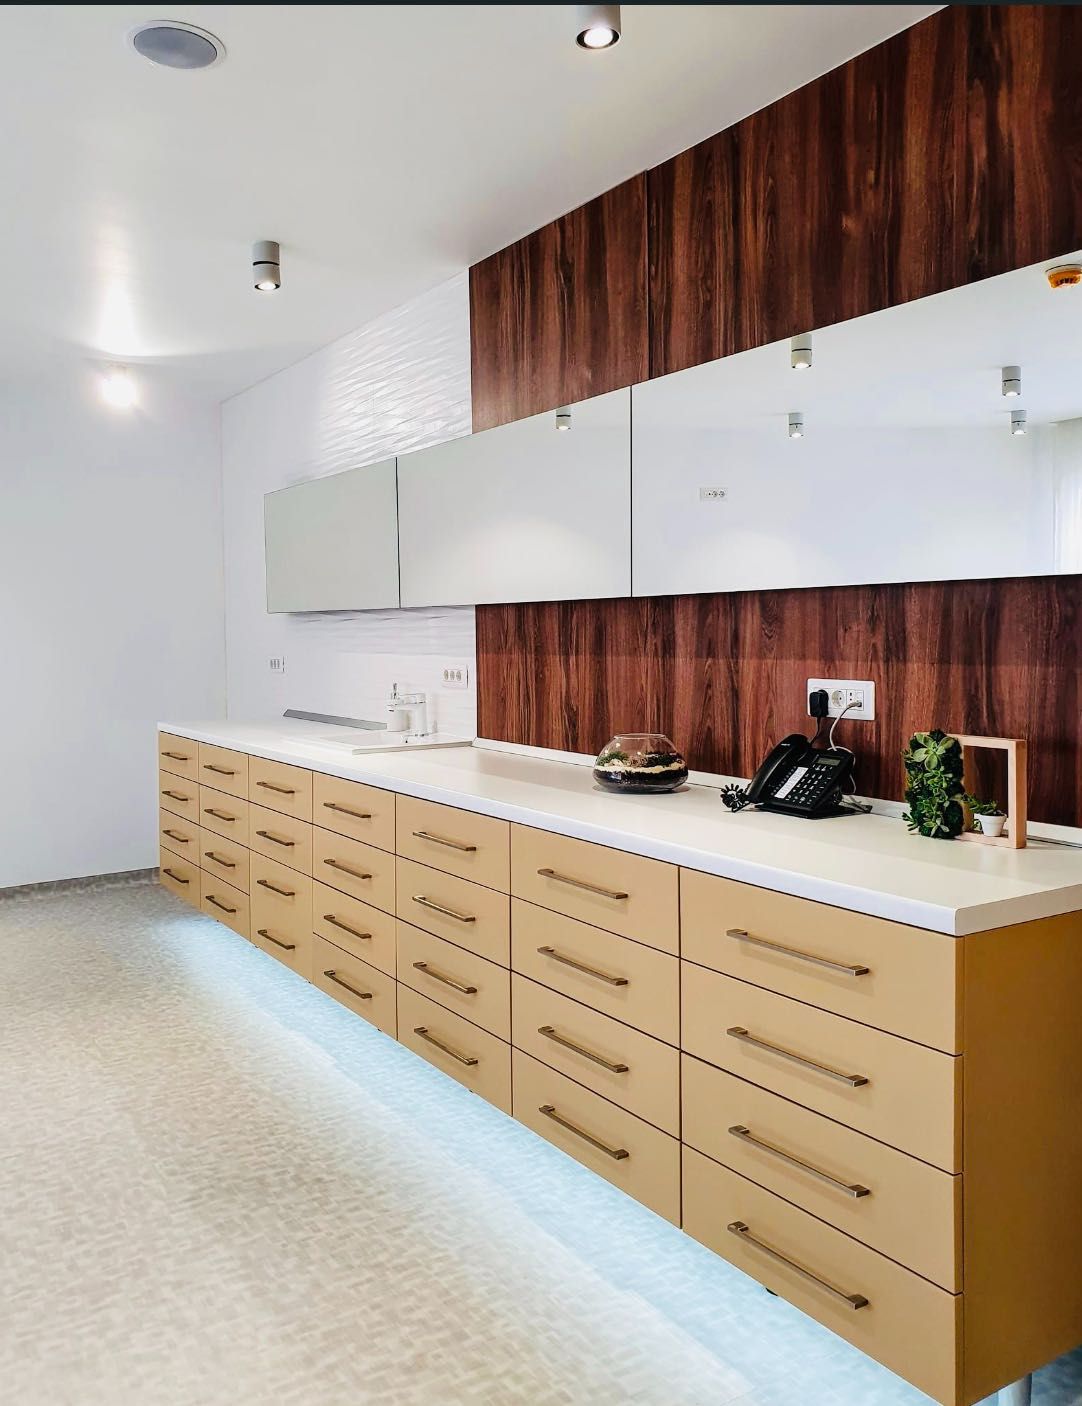 Cabinet de inchiriat in CLINICA, Utilitățile+Curățenia INCLUSE 300 Eur